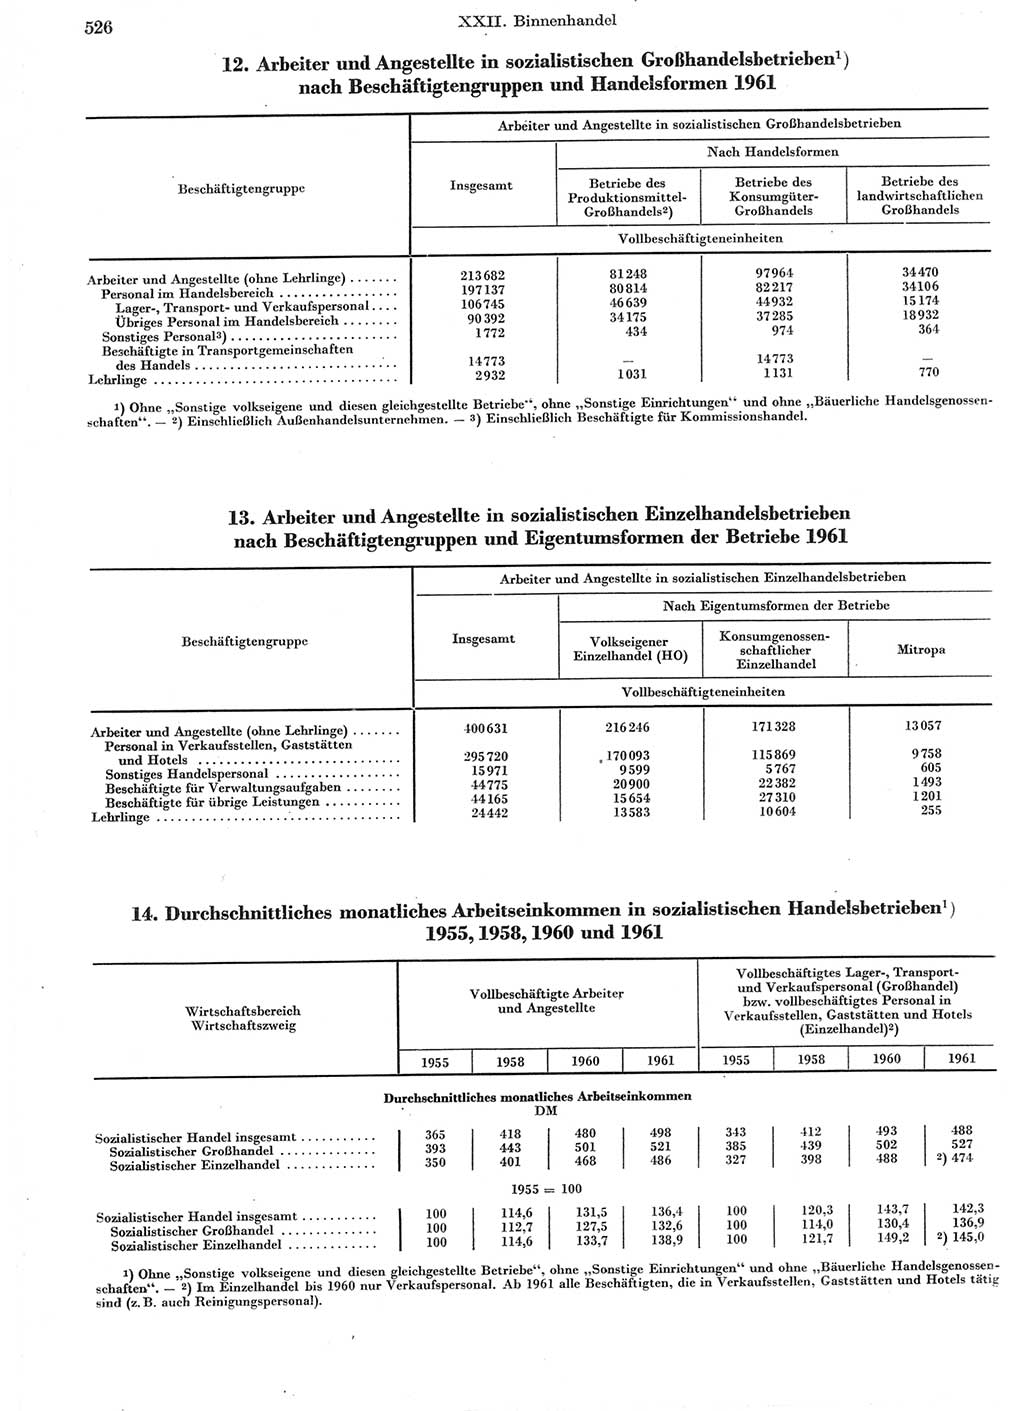 Statistisches Jahrbuch der Deutschen Demokratischen Republik (DDR) 1962, Seite 526 (Stat. Jb. DDR 1962, S. 526)